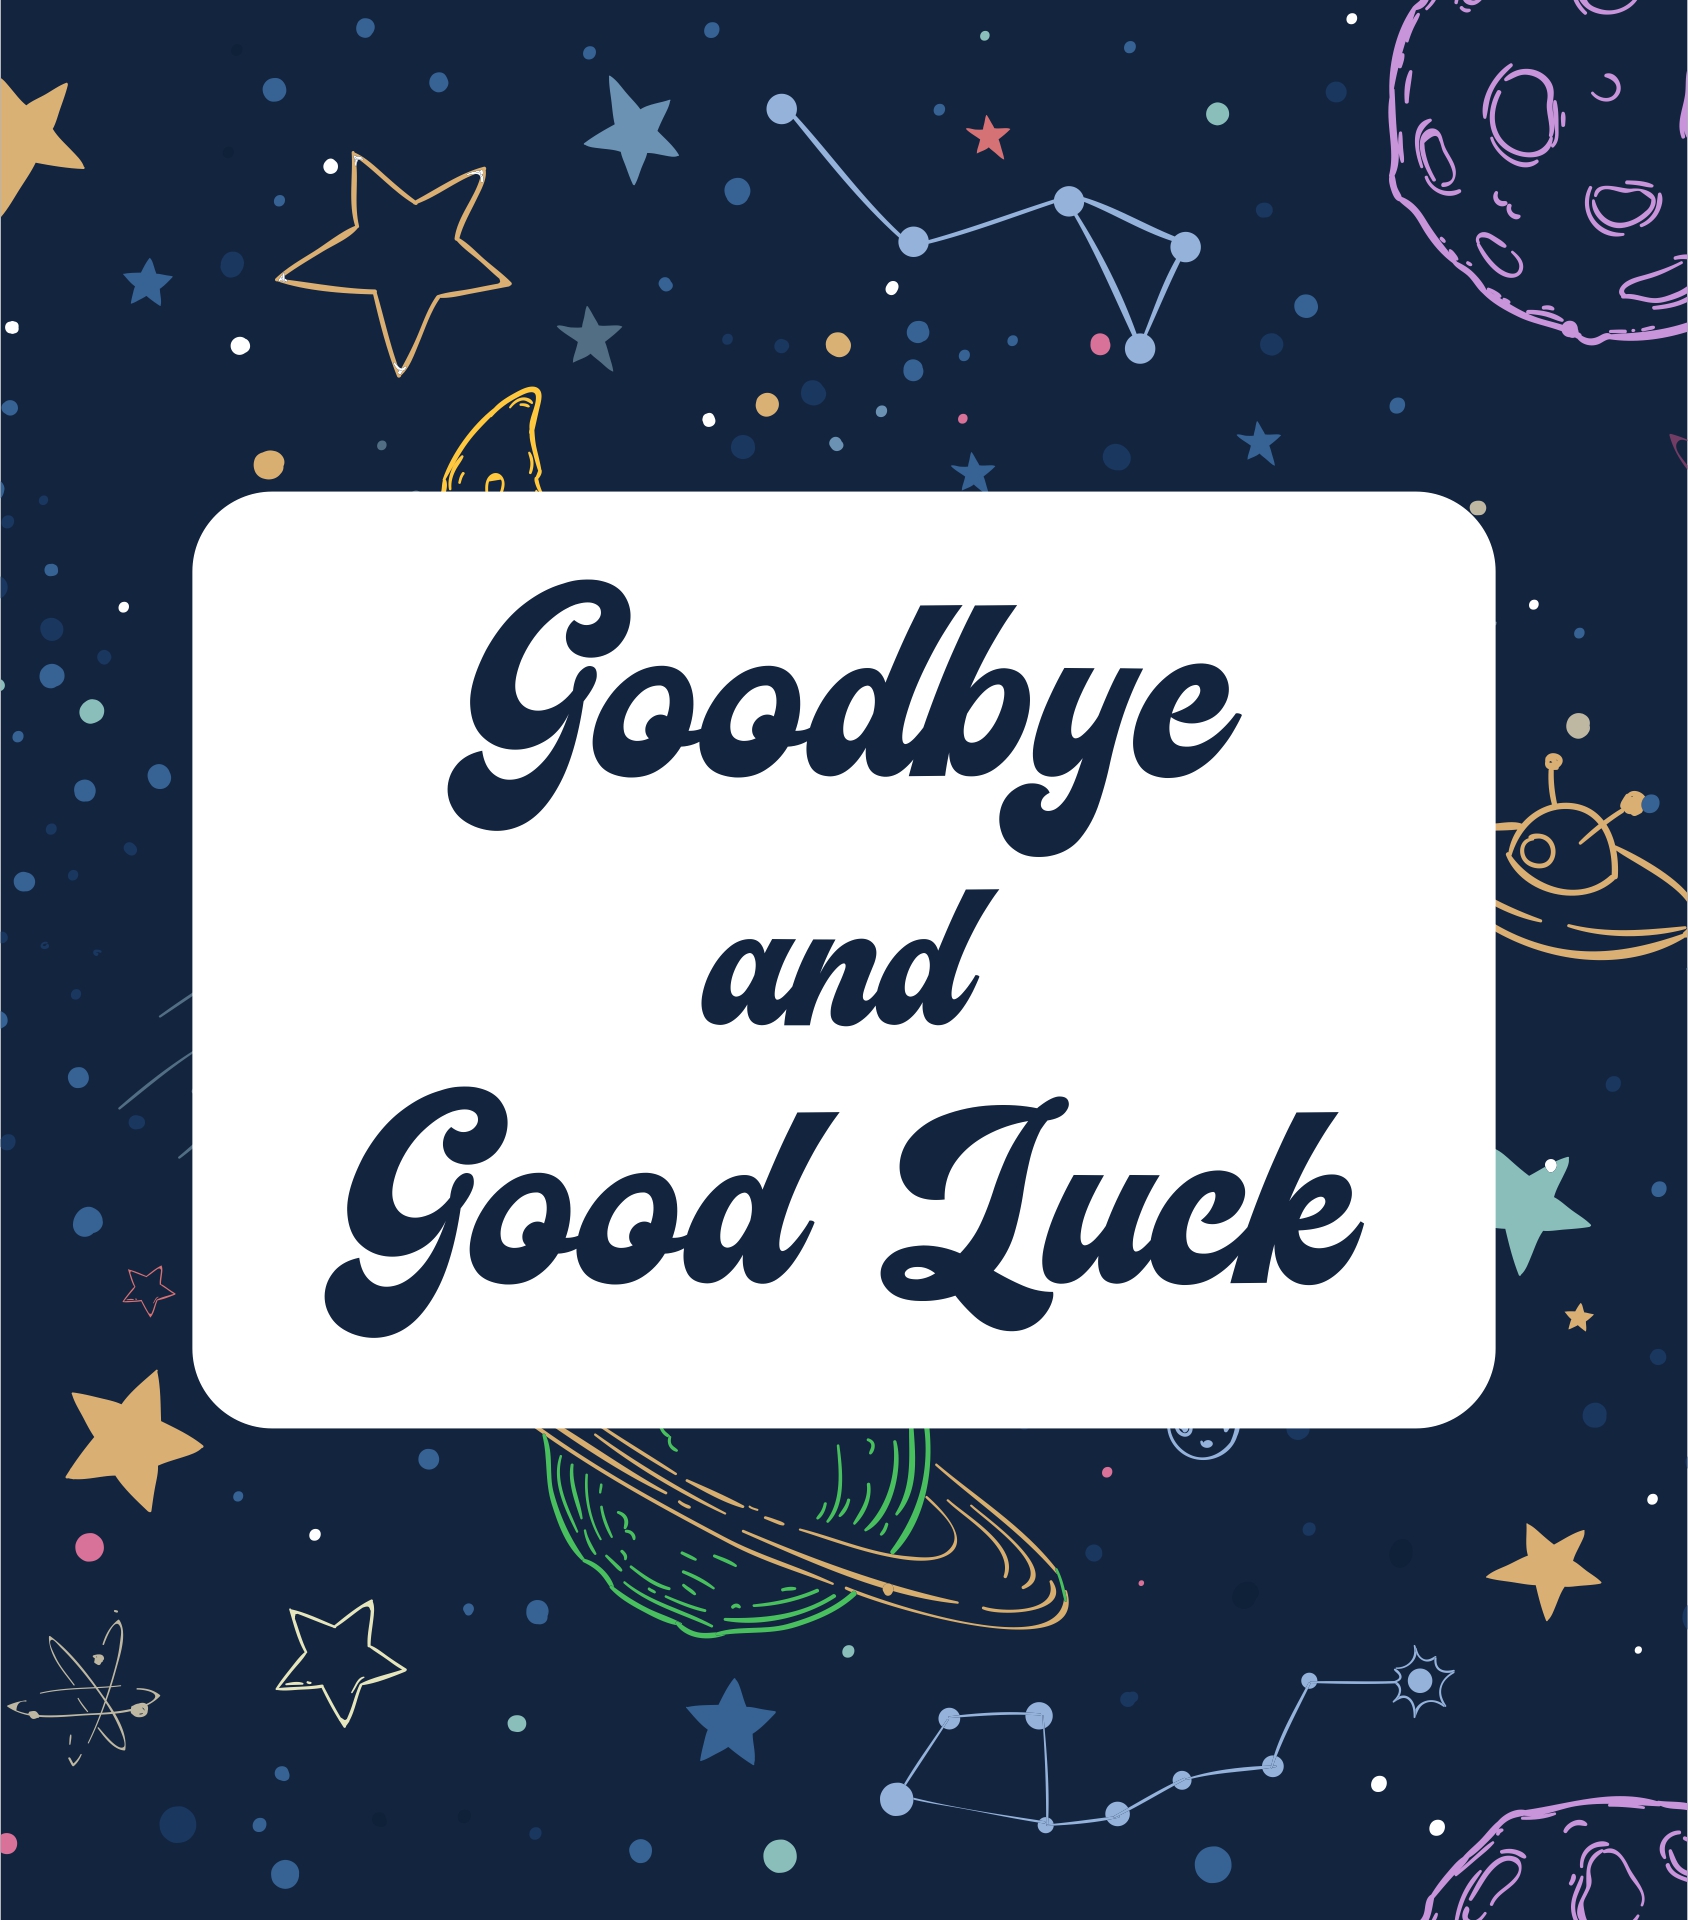 7 Best Images of Good Bye Cards Printable Free Printable Goodbye